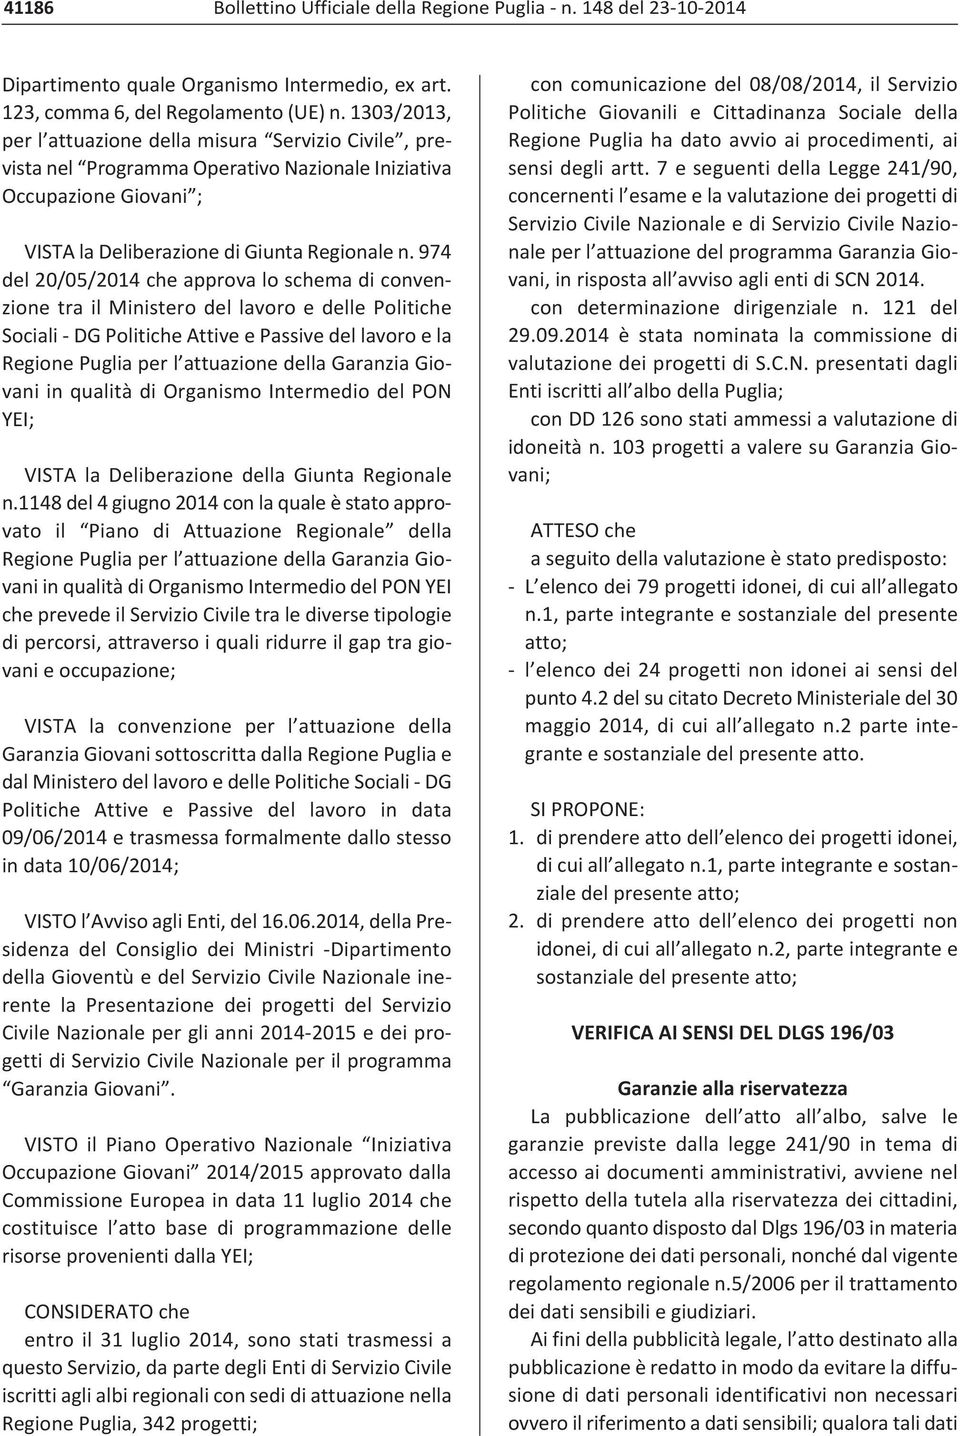 974 del 20/05/2014 che approva lo schema di convenzione tra il Ministero del lavoro e delle Politiche Sociali DG Politiche Attive e Passive del lavoro e la Regione Puglia per l attuazione della